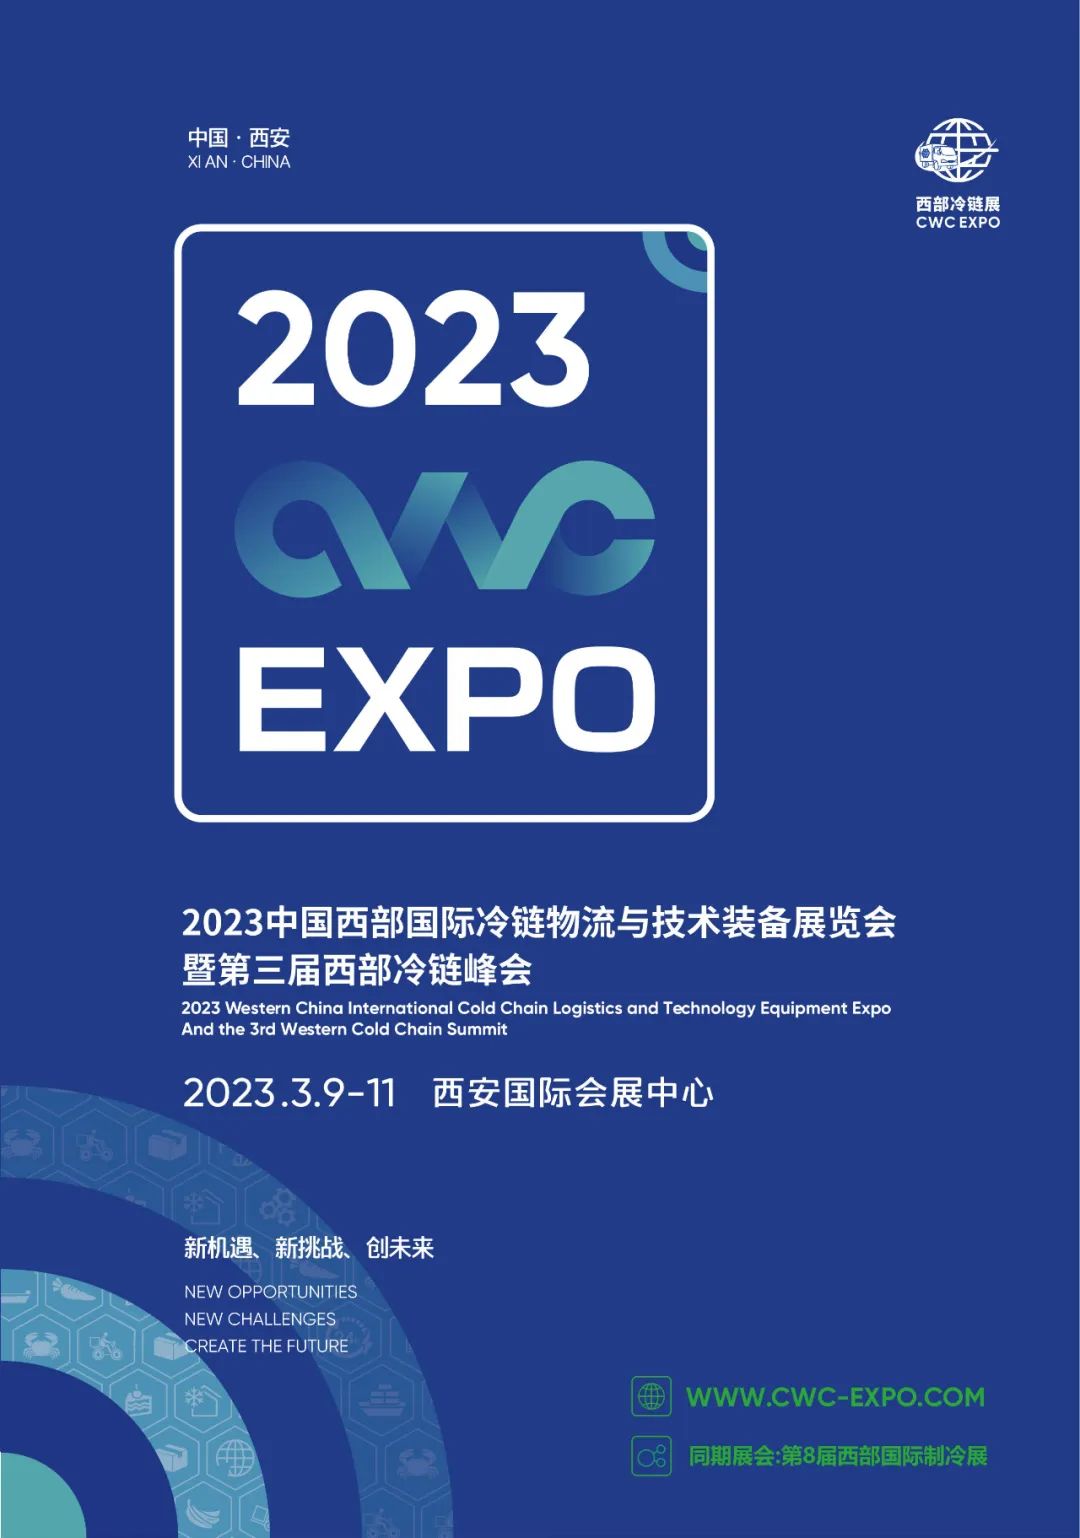 2023中国西部国际冷链物流及技术装备博览会暨第三届西部冷链高峰论坛